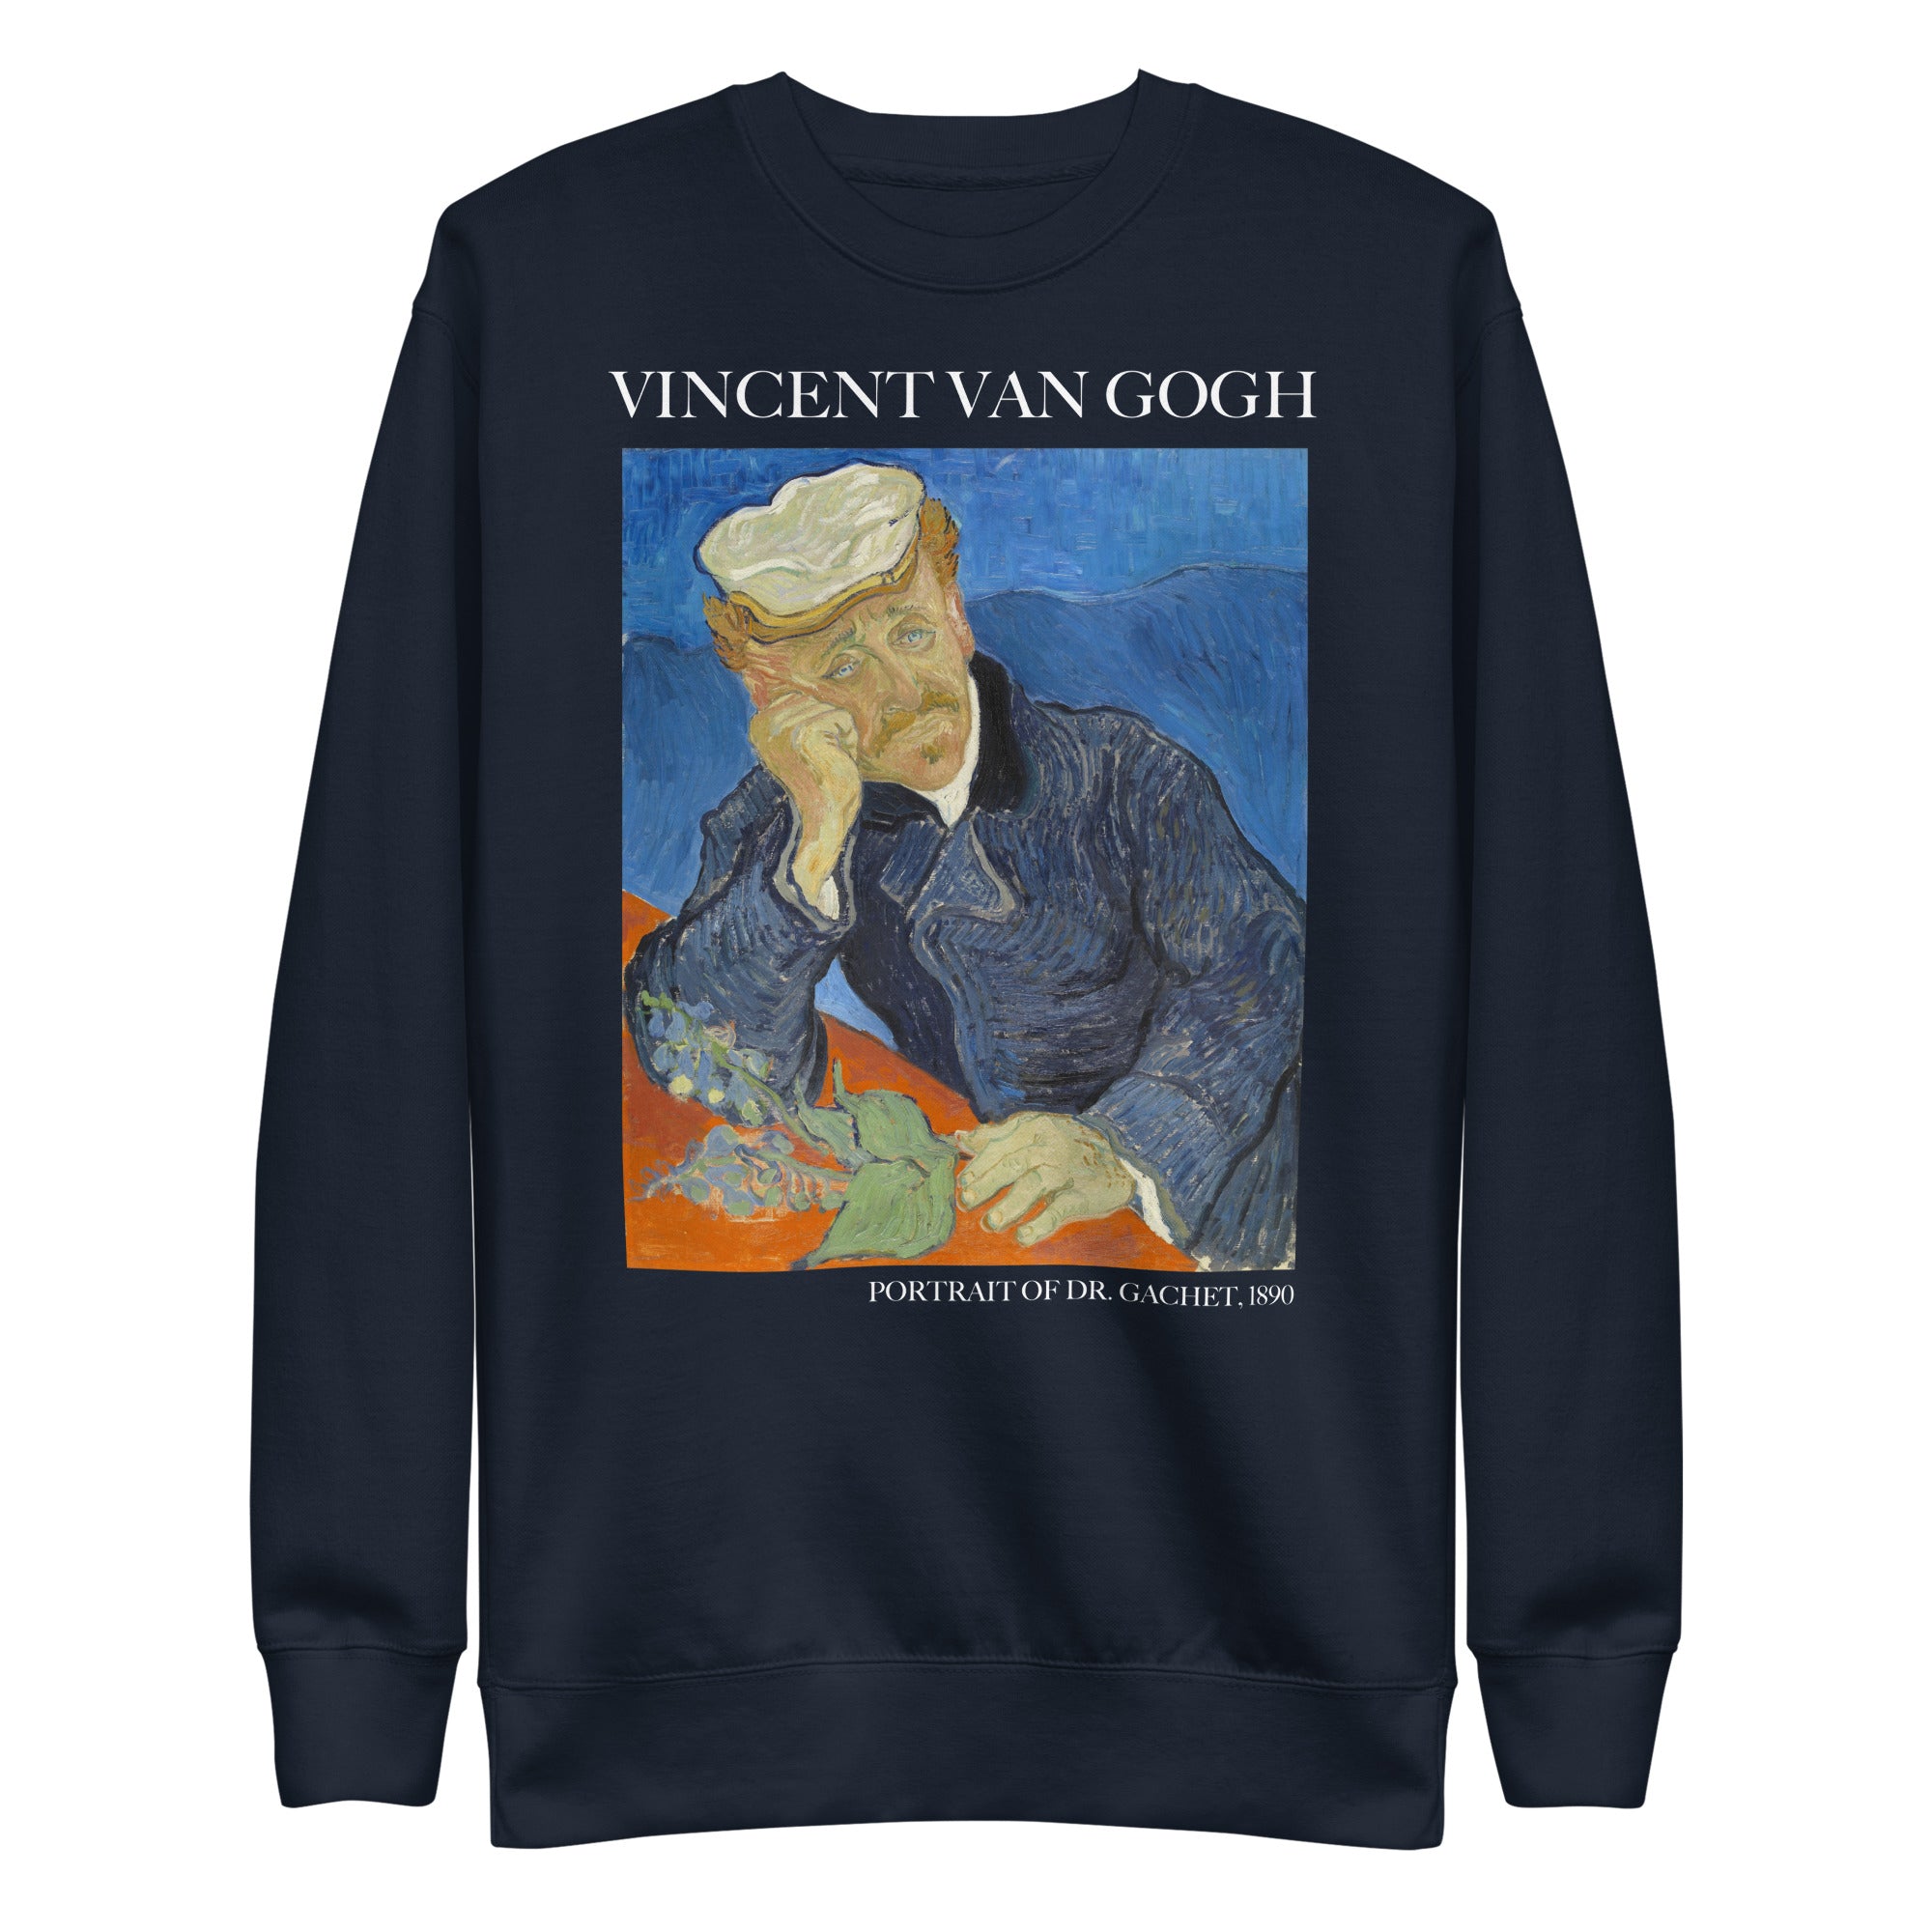 Vincent van Gogh 'Portrait of Dr. Gachet' Famous Painting Sweatshirt | Unisex Premium Sweatshirt